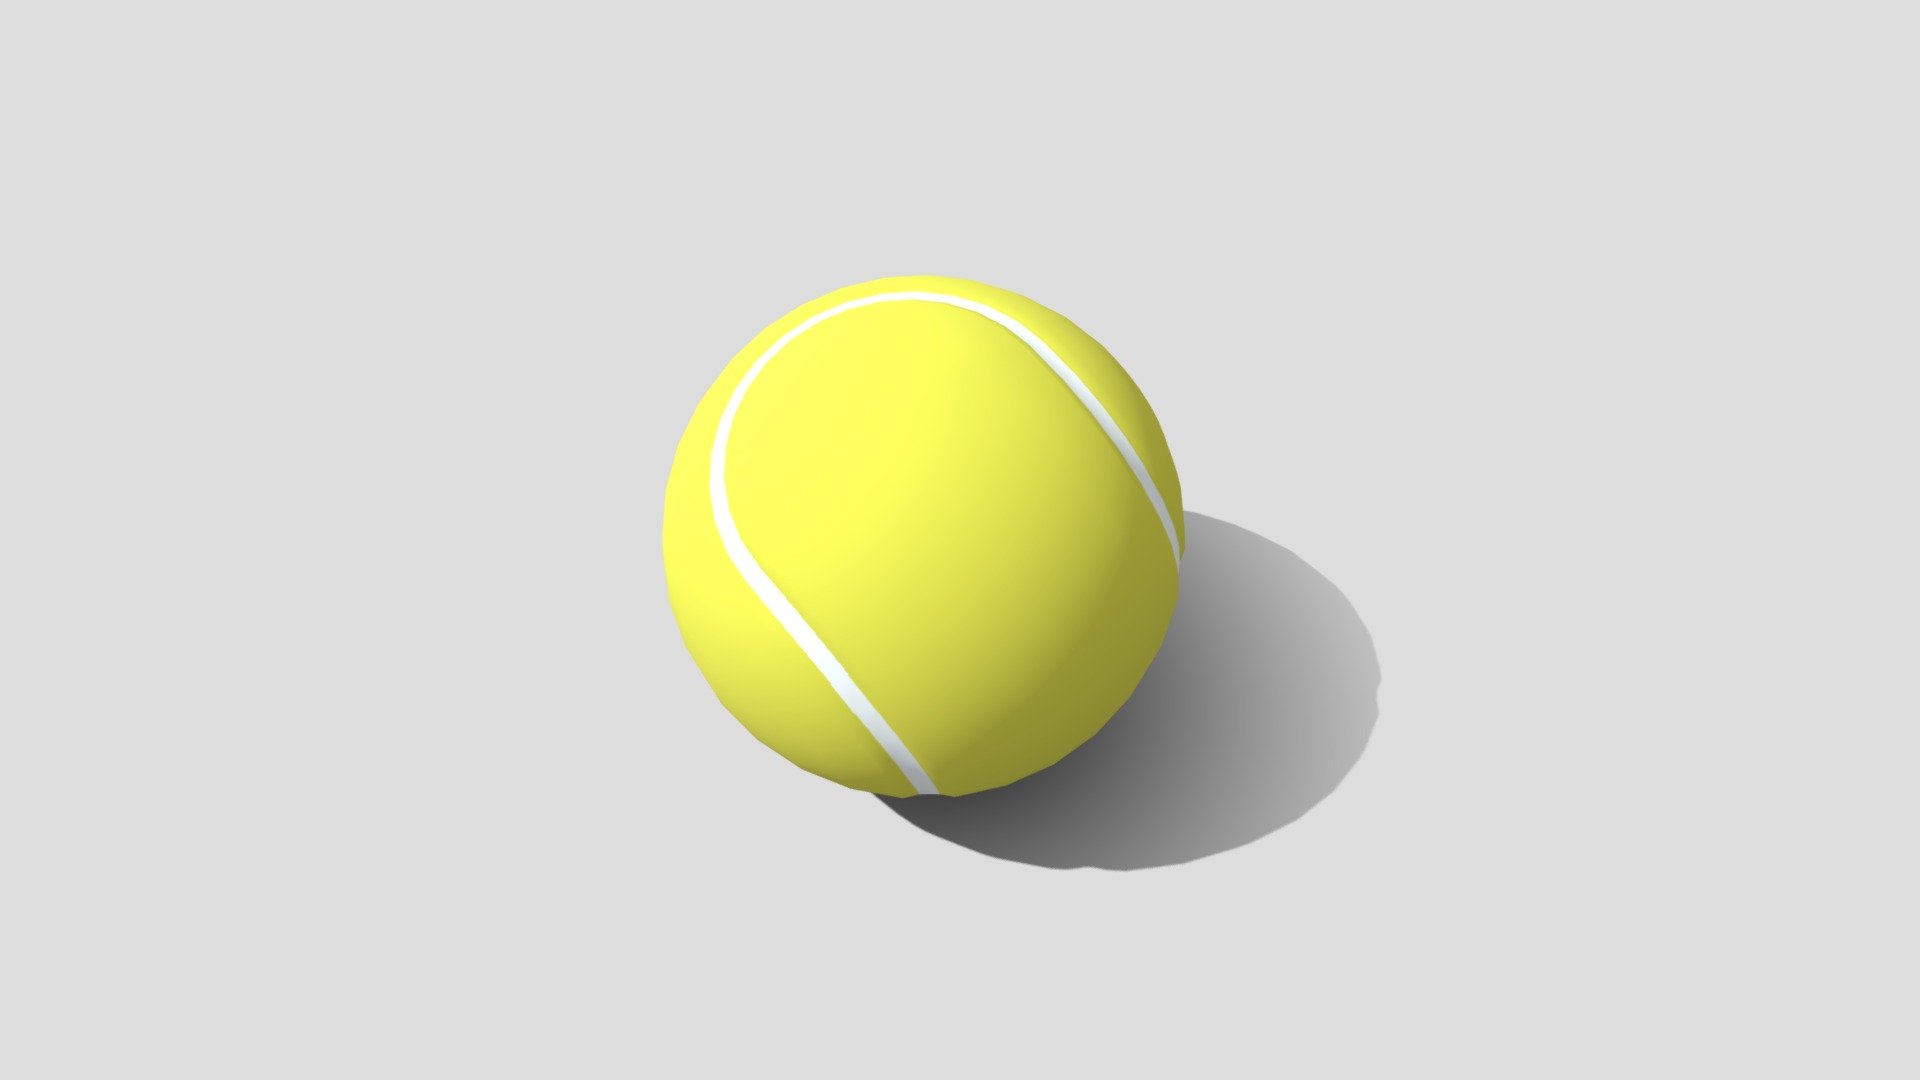 Pelota o Balón de Fútbol, listo para ser usado en sus escenas en 3D, sírvase libre de usarlo como desee 3d model